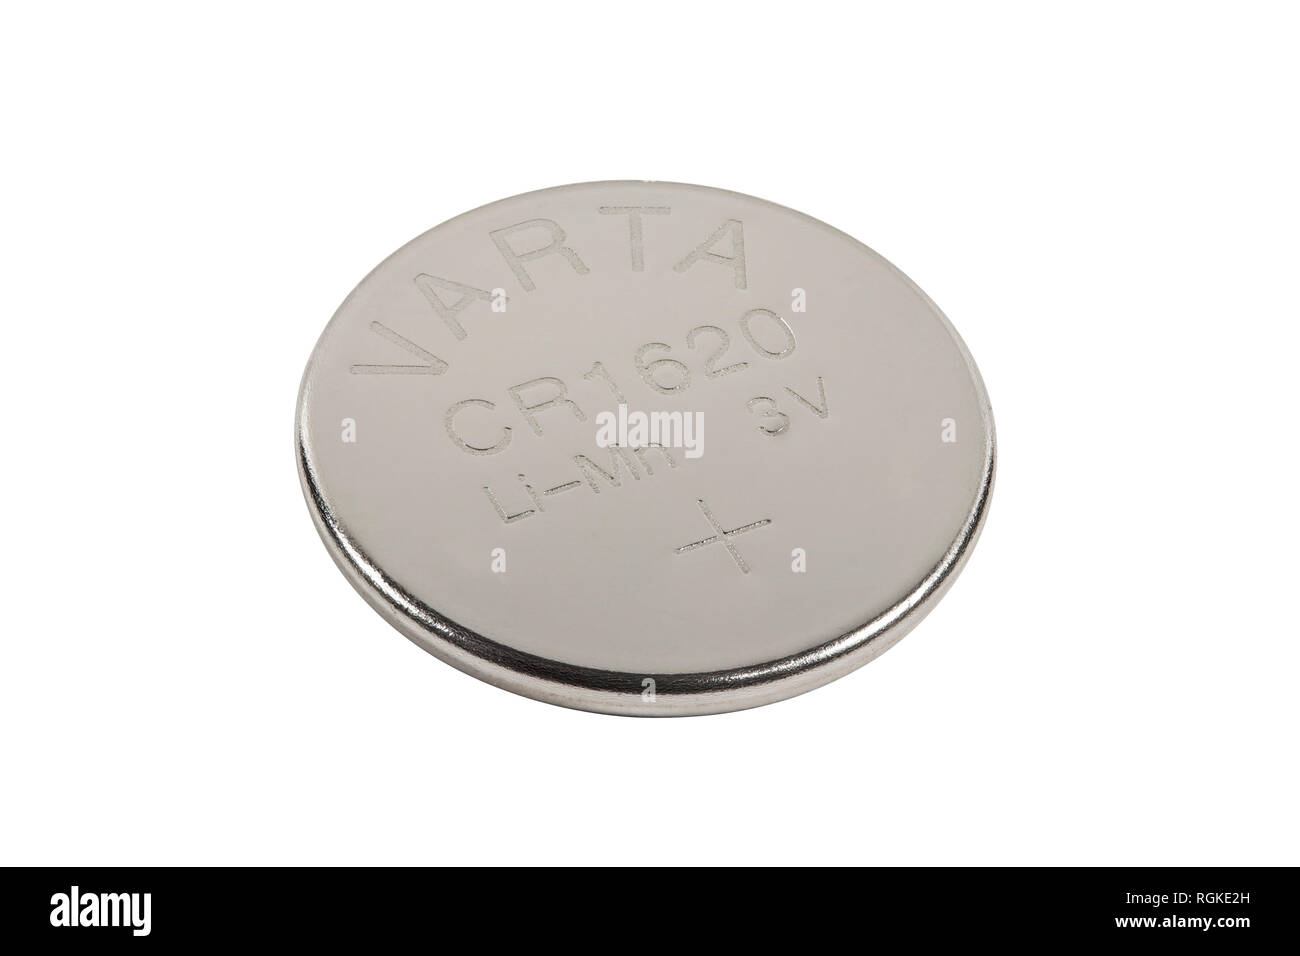 Die Varta Lithium Knopfzelle Batterie für ein autoschlüssel auf weißem Hintergrund Stockfoto